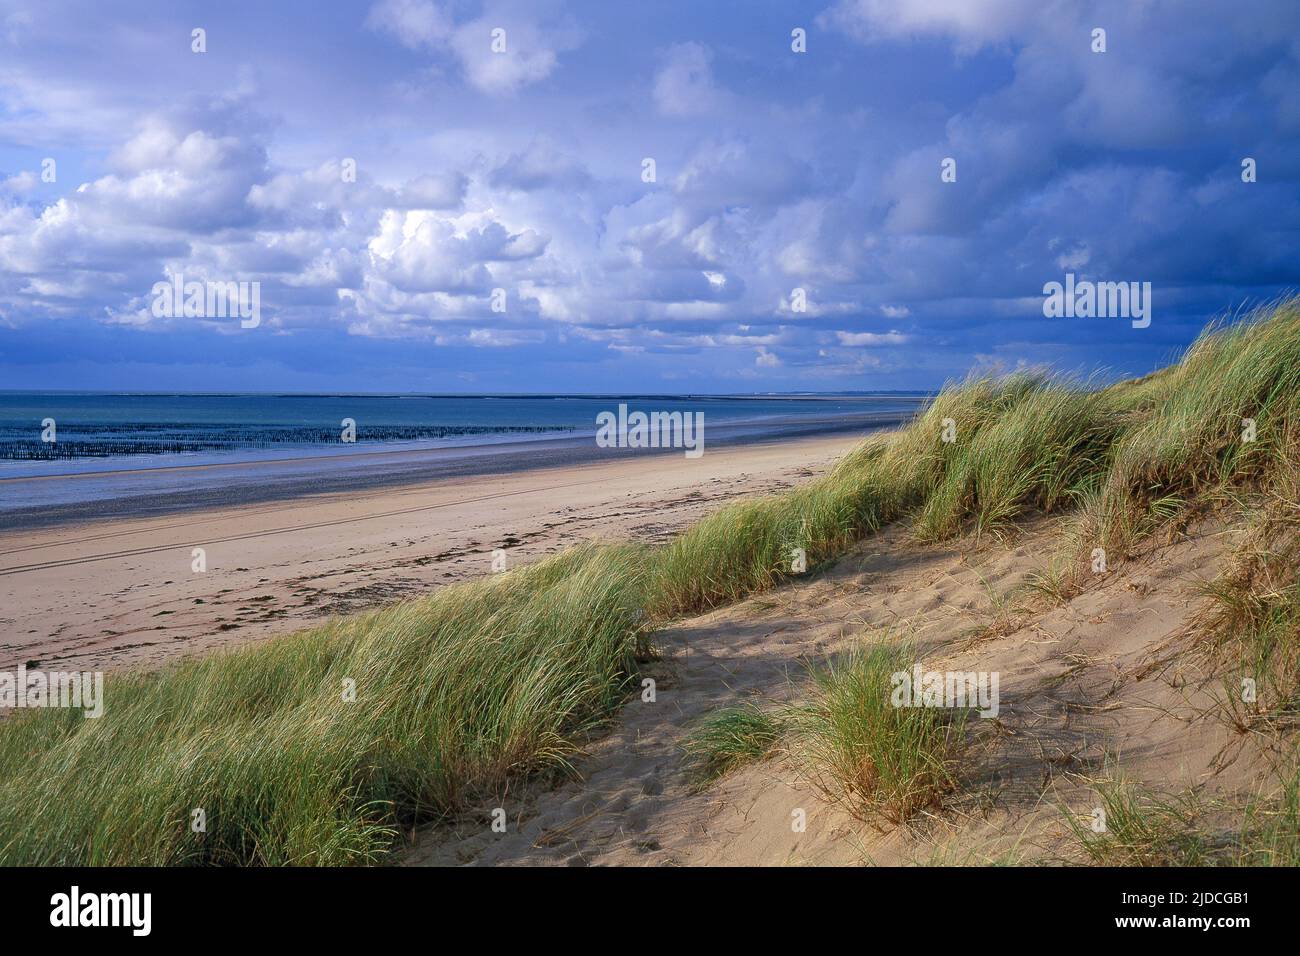 France, Pas-de-Calais Audresselles, the dune coast, maritime landscape Stock Photo